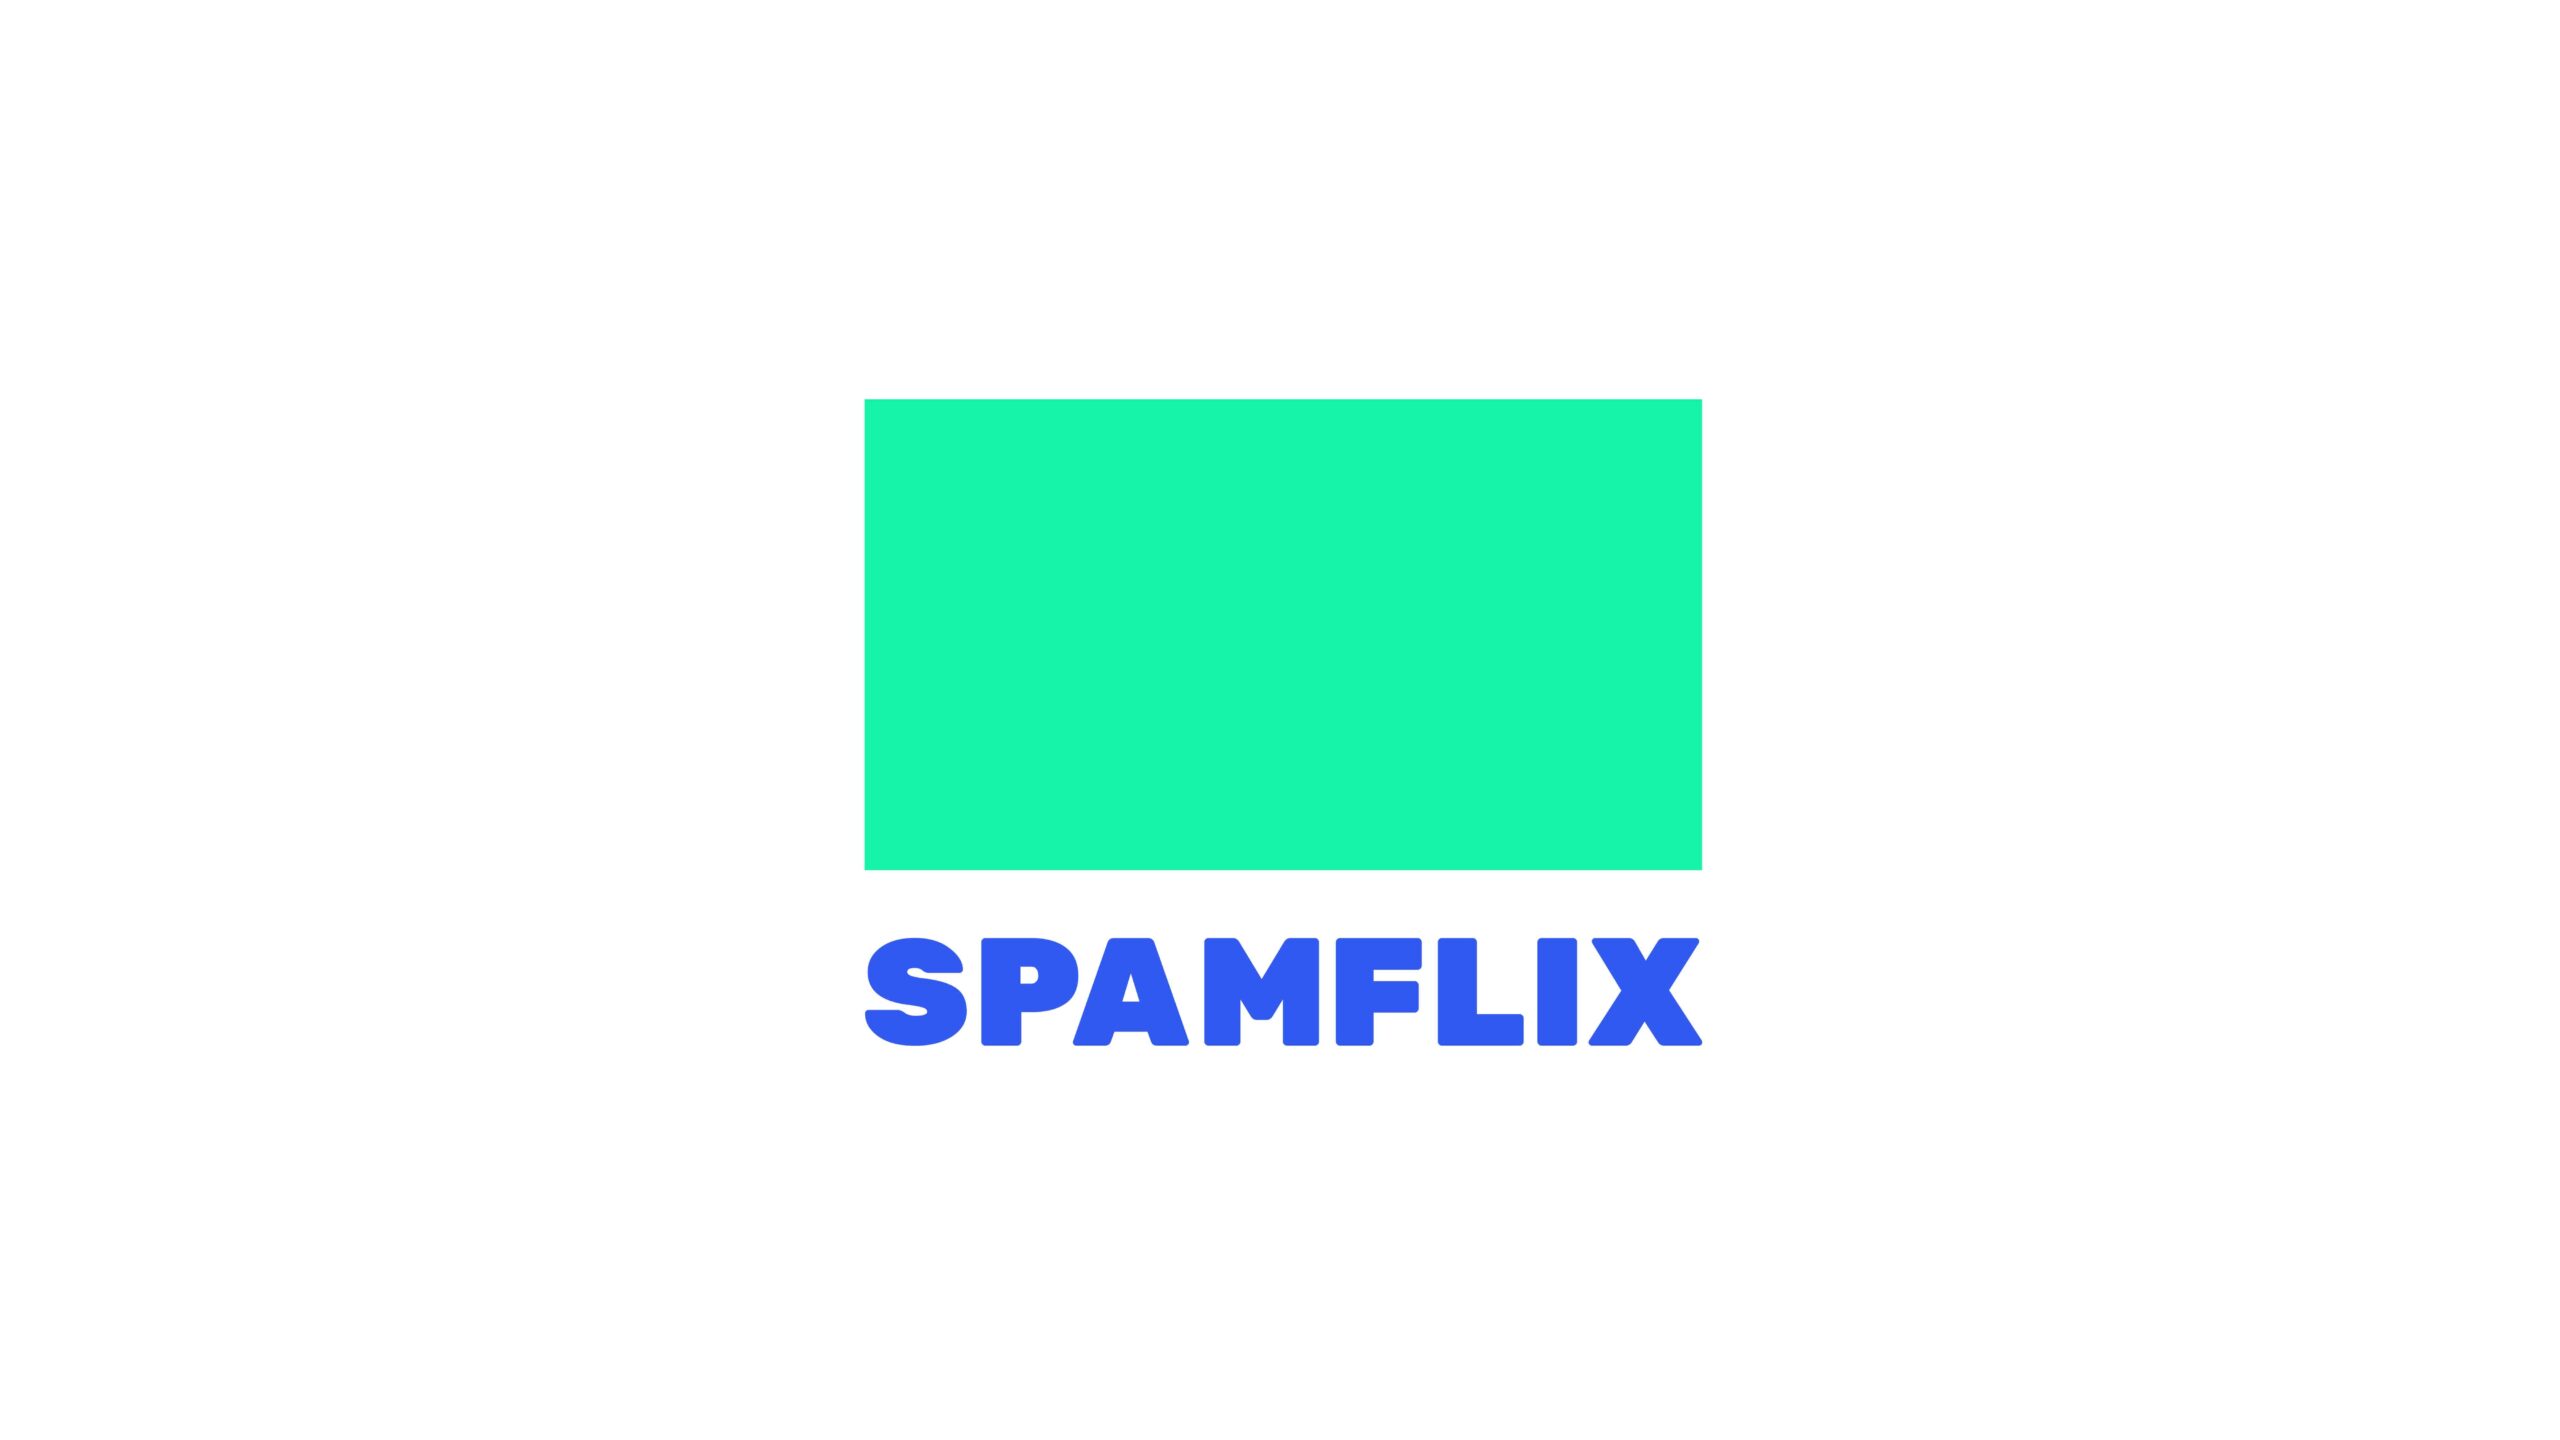 Spamflix, la plataforma de streaming para películas de culto ya está disponible